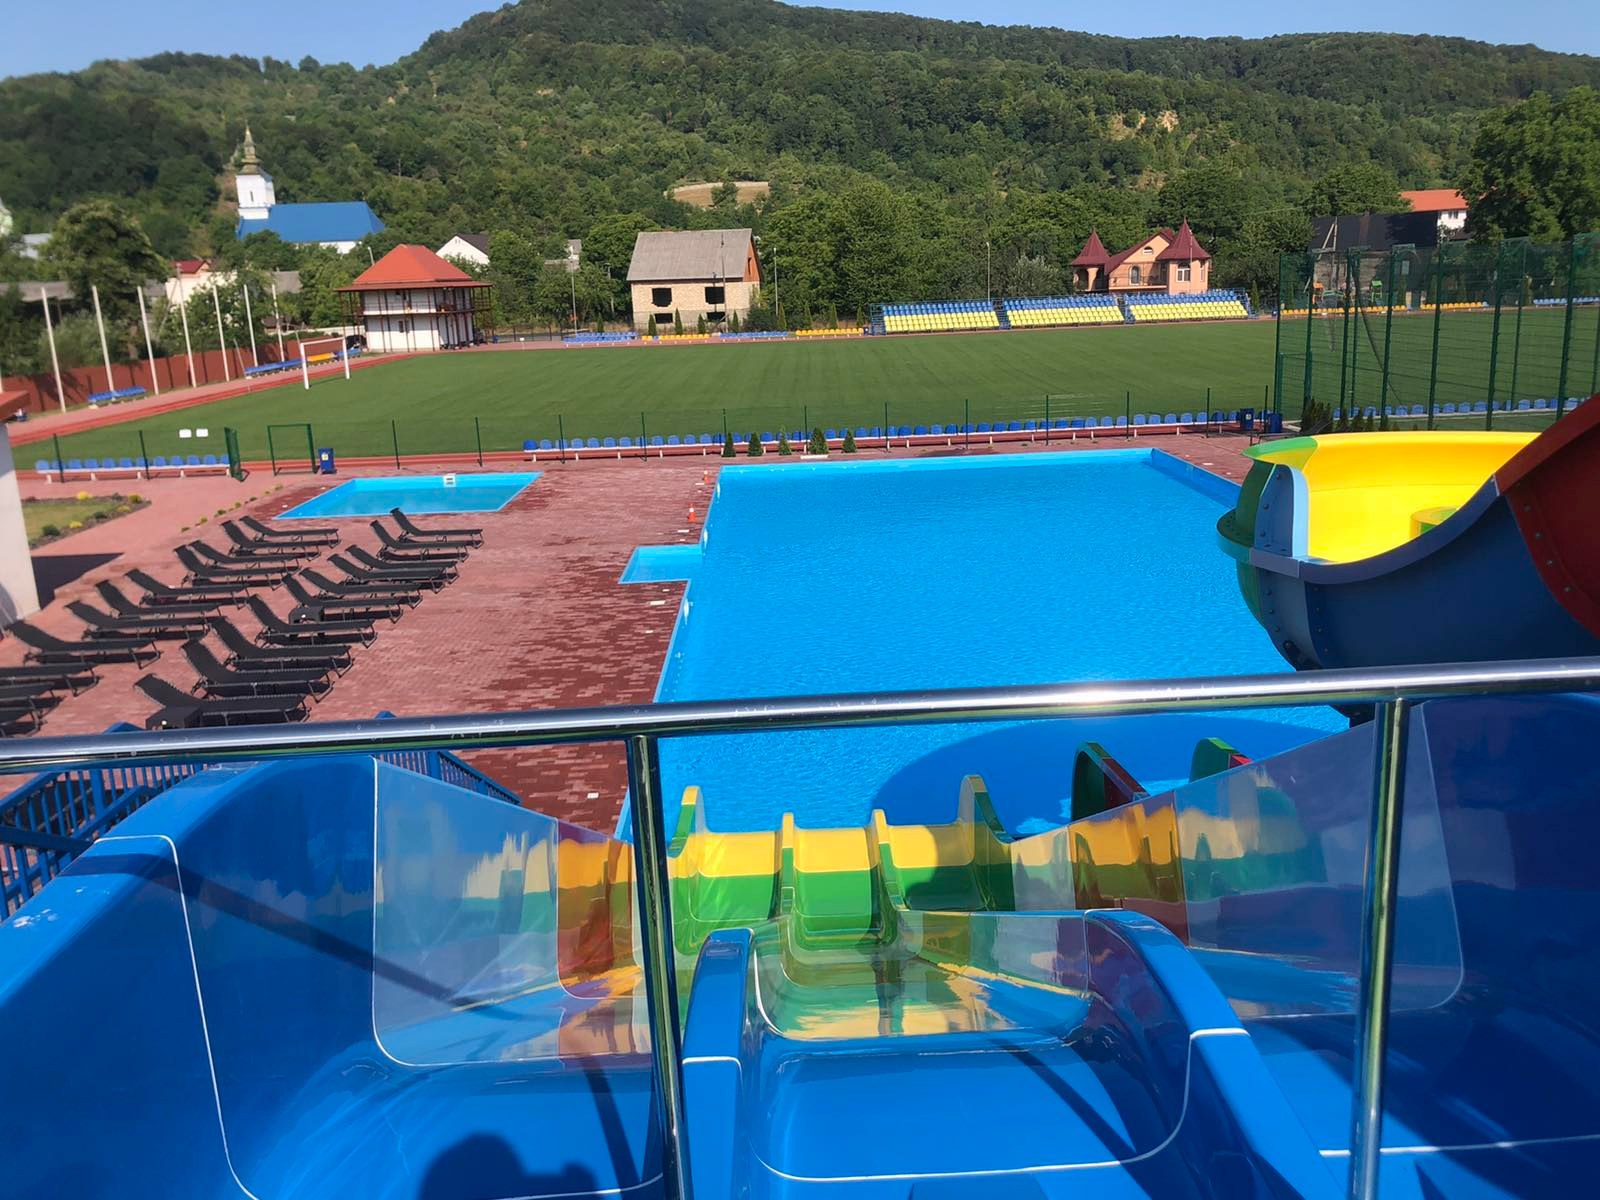 Аквапарк Вільхівці – літній відпочинок на Закарпатті, за 20 км від міста Тячів, дорогою на Дубове, для гостей відкритий басейн, водяні гірки.  